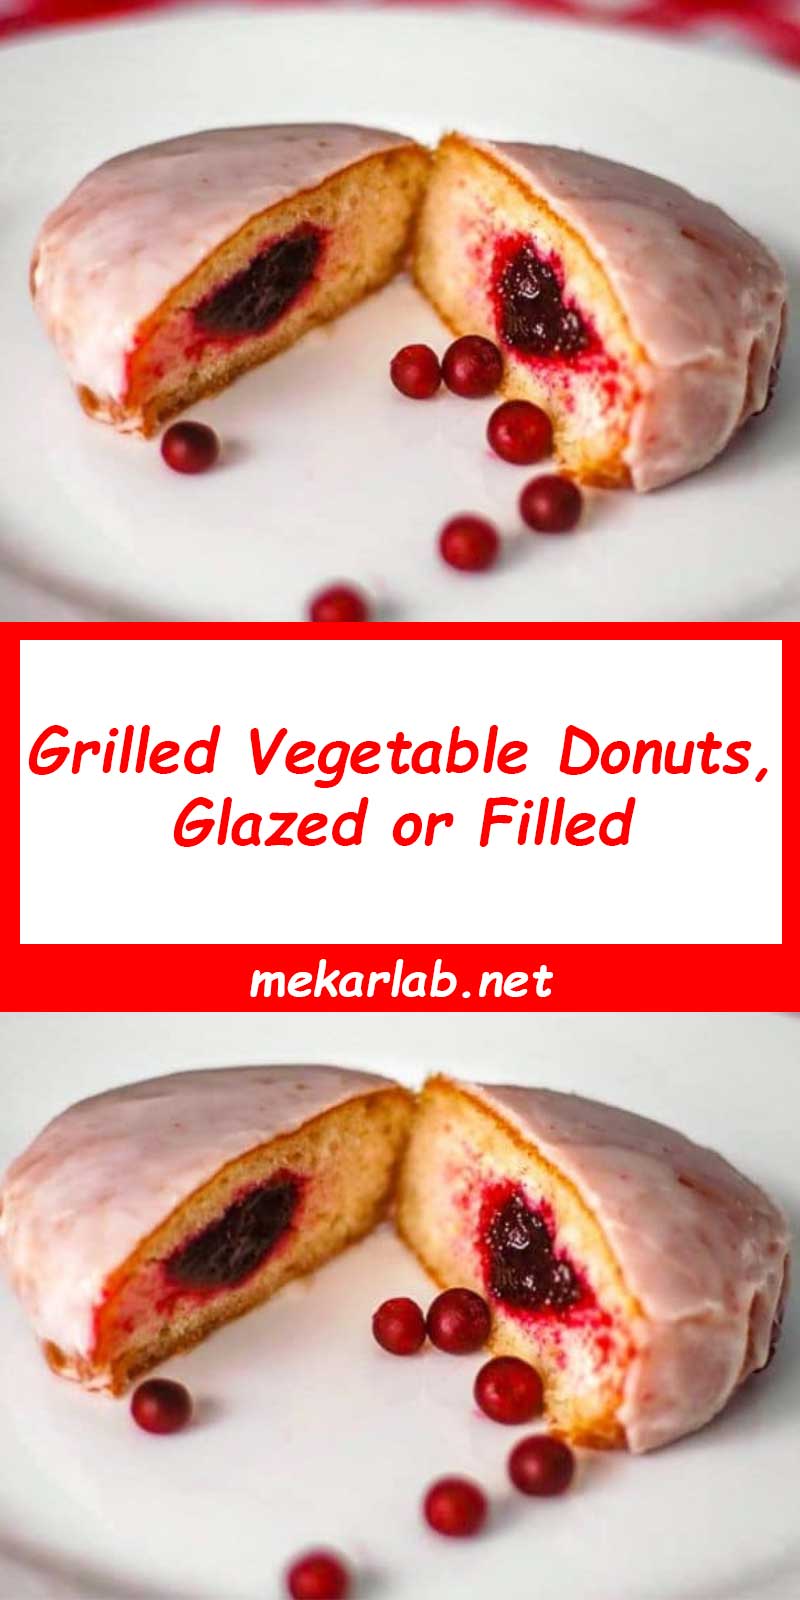 Grilled Vegetable Donuts, Glazed or Filled